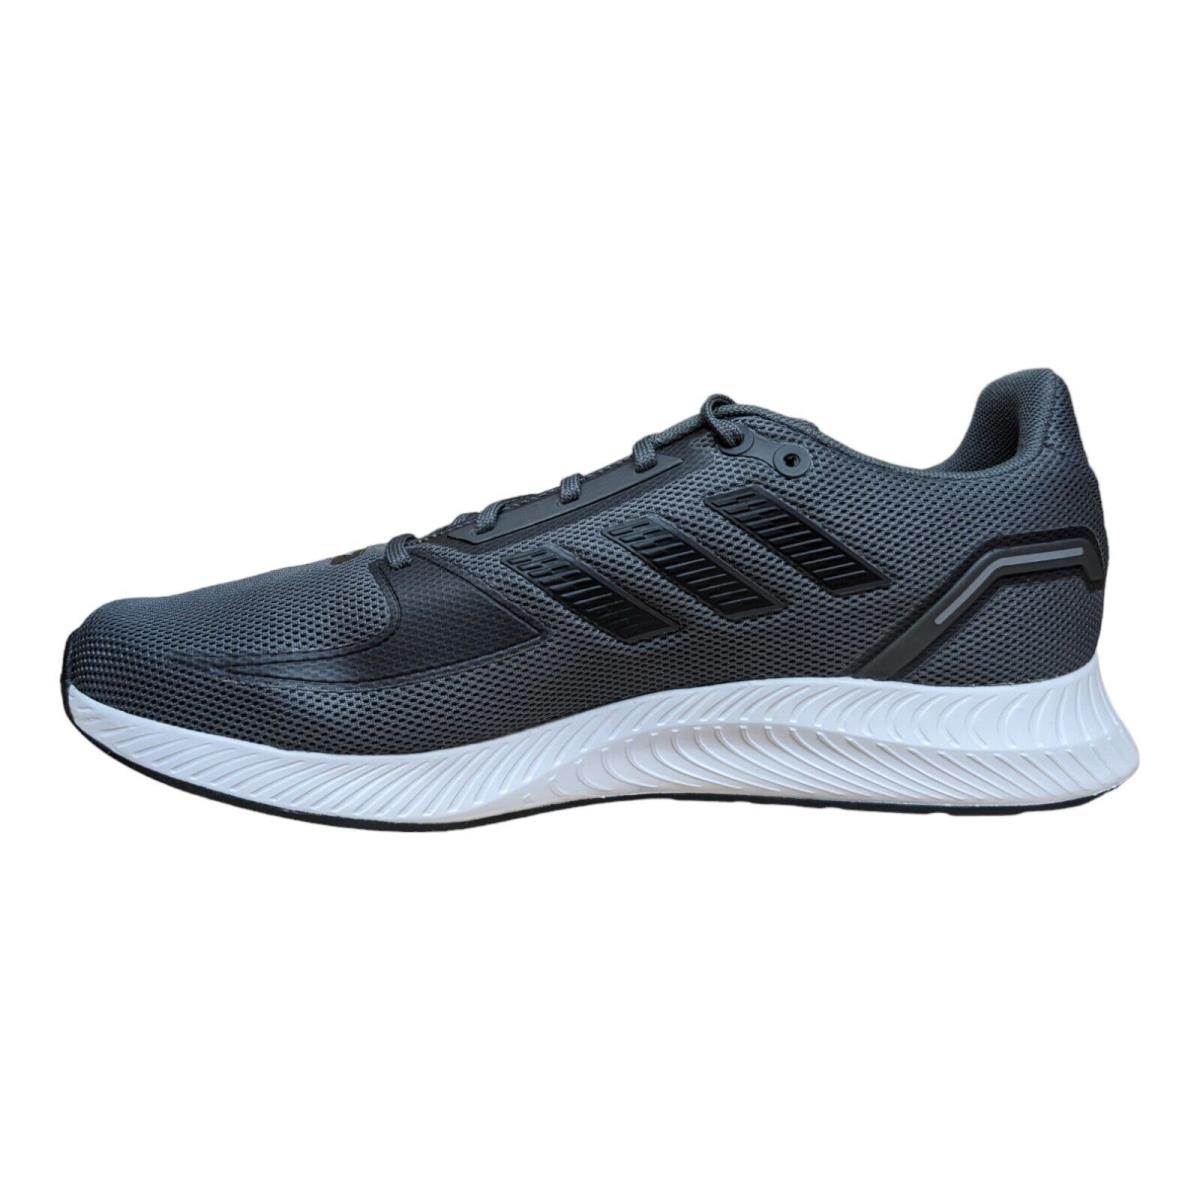 Adidas Men`s Runfalcon 2.0 Athletic Shoe - US Shoe Size 8.5 Black - FY8741